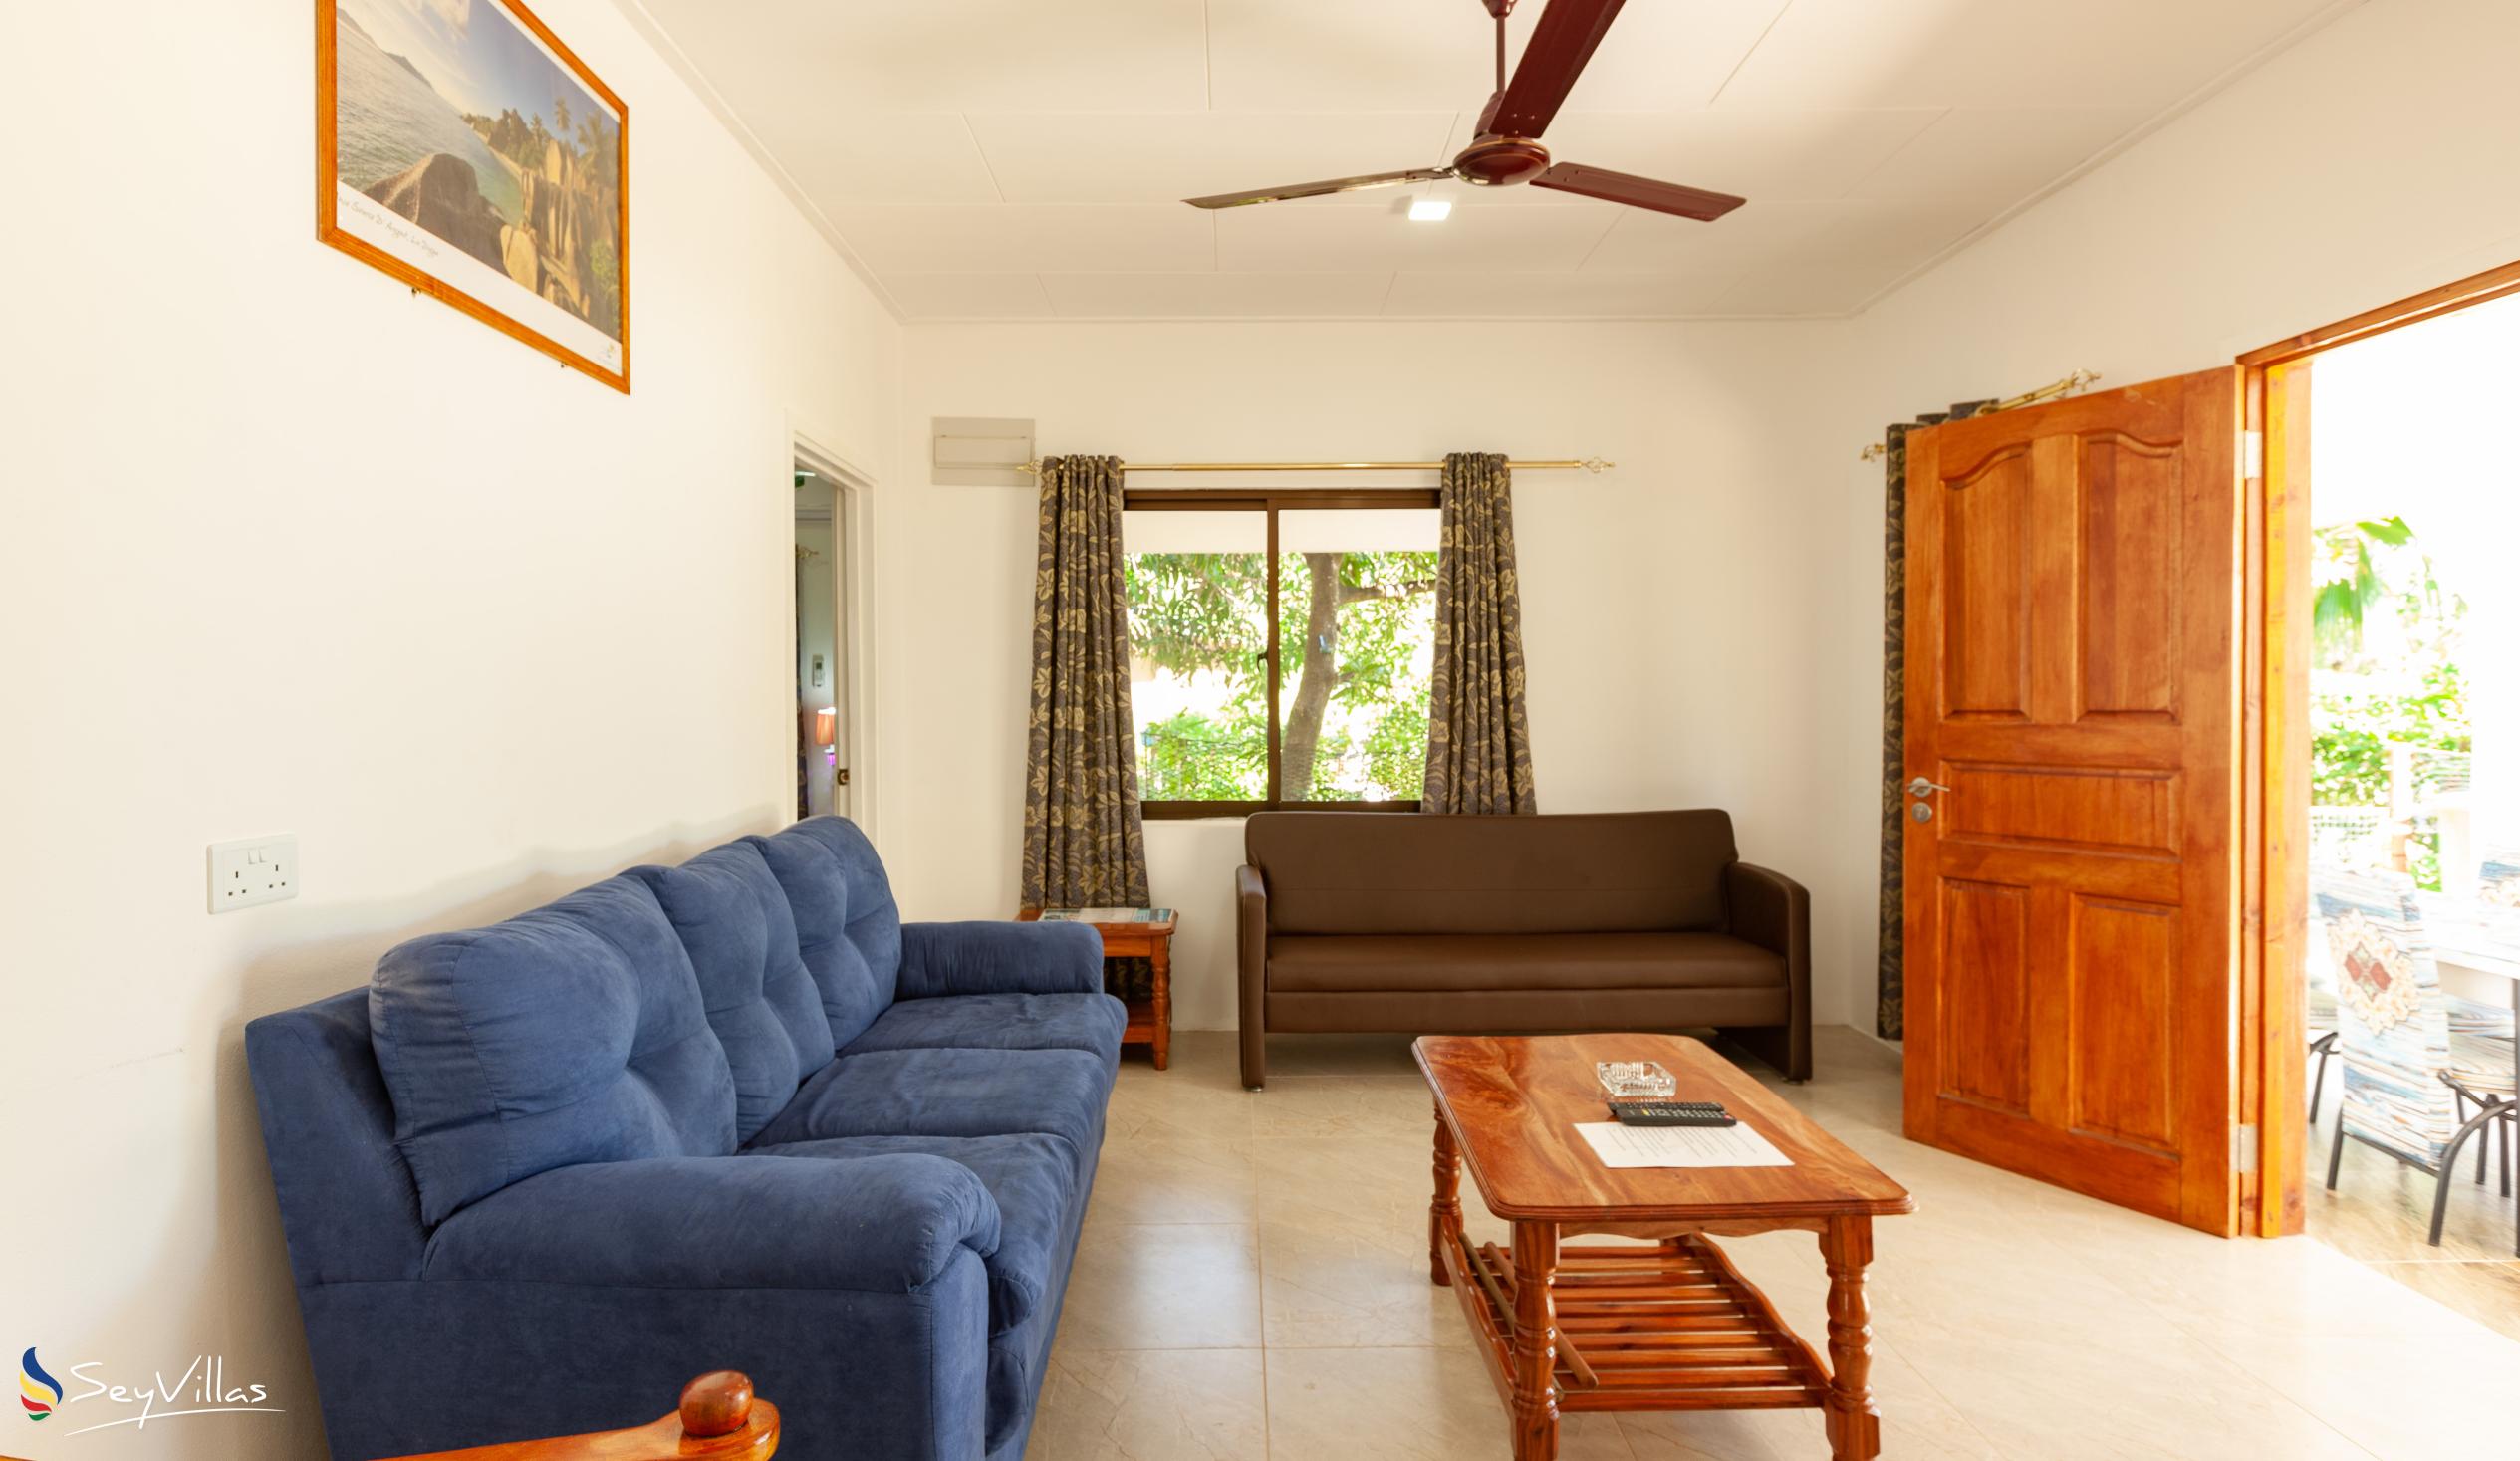 Foto 44: Anse Grosse Roche Beach Villa - Appartamento Familiare con 2 camere da letto - La Digue (Seychelles)